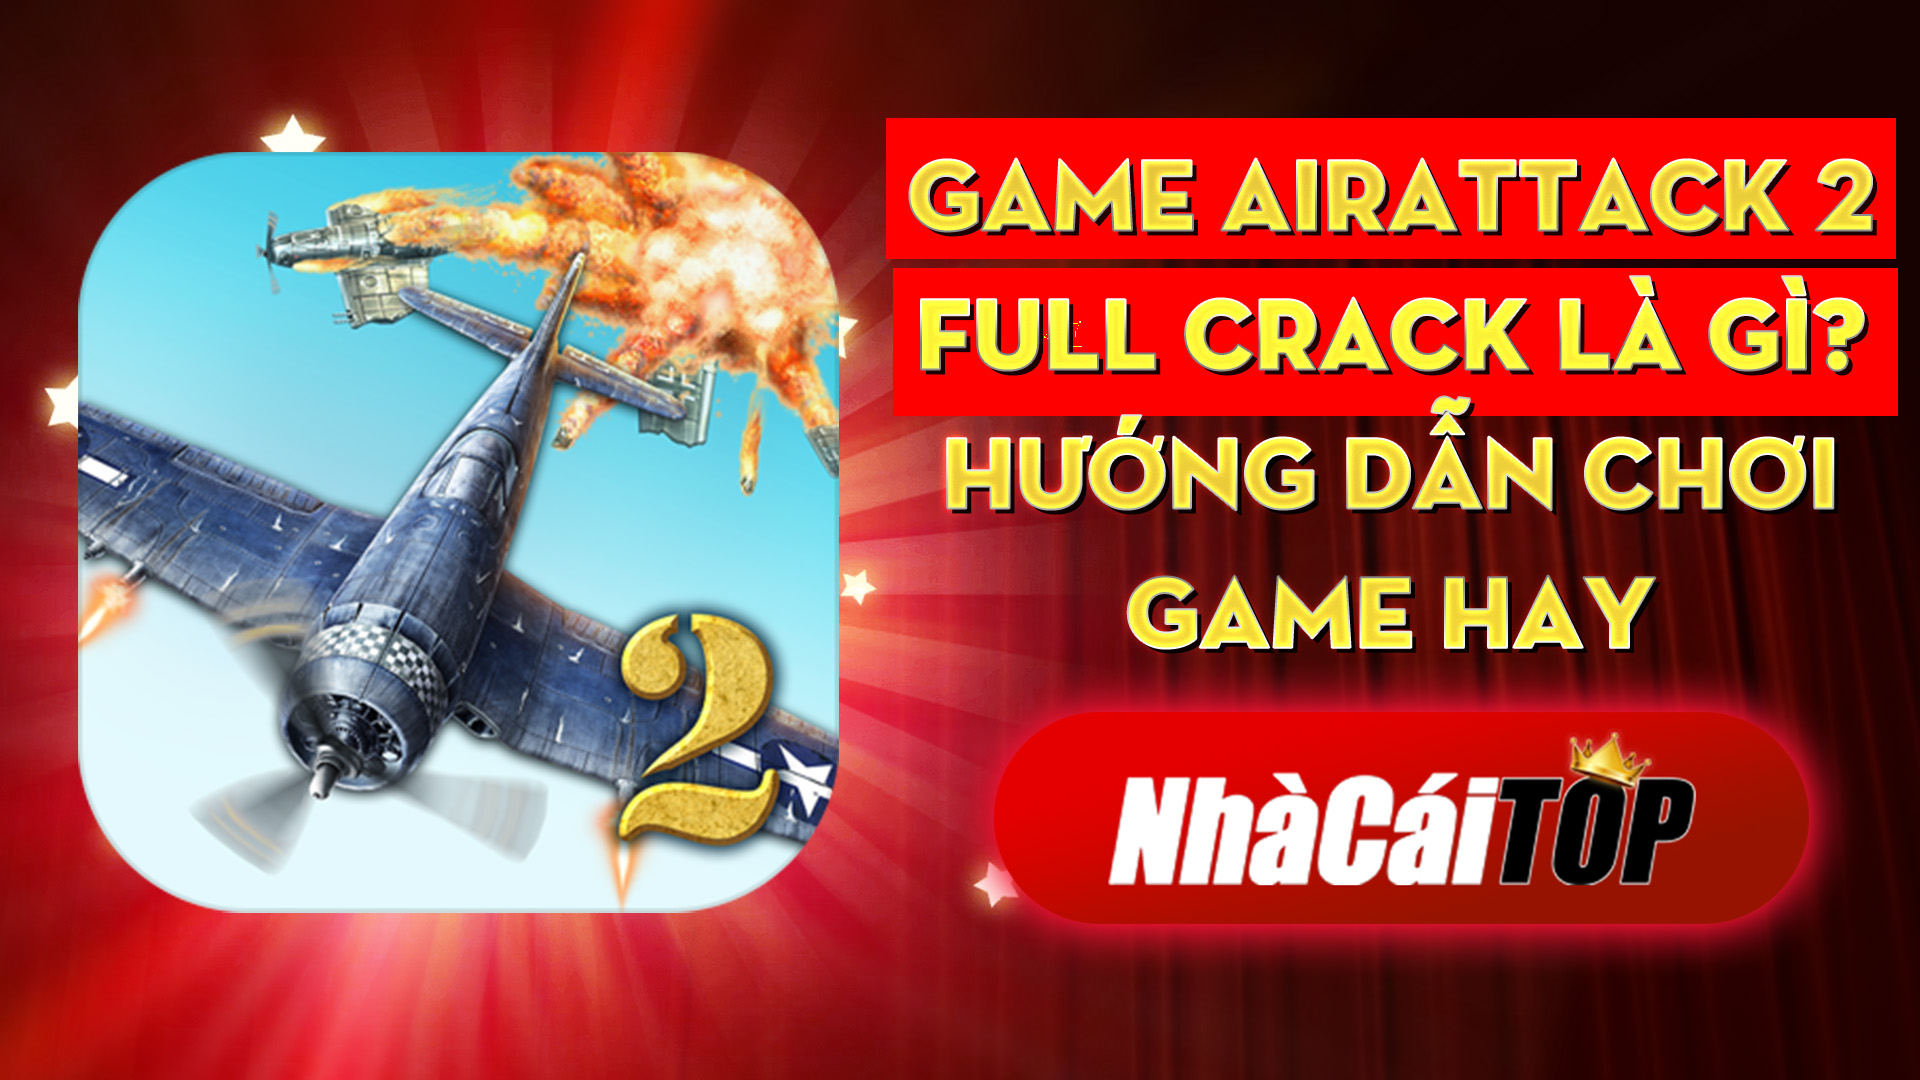 321 Game Airattack 2 Full Crack La Gi Huong Dan Choi Game Hay